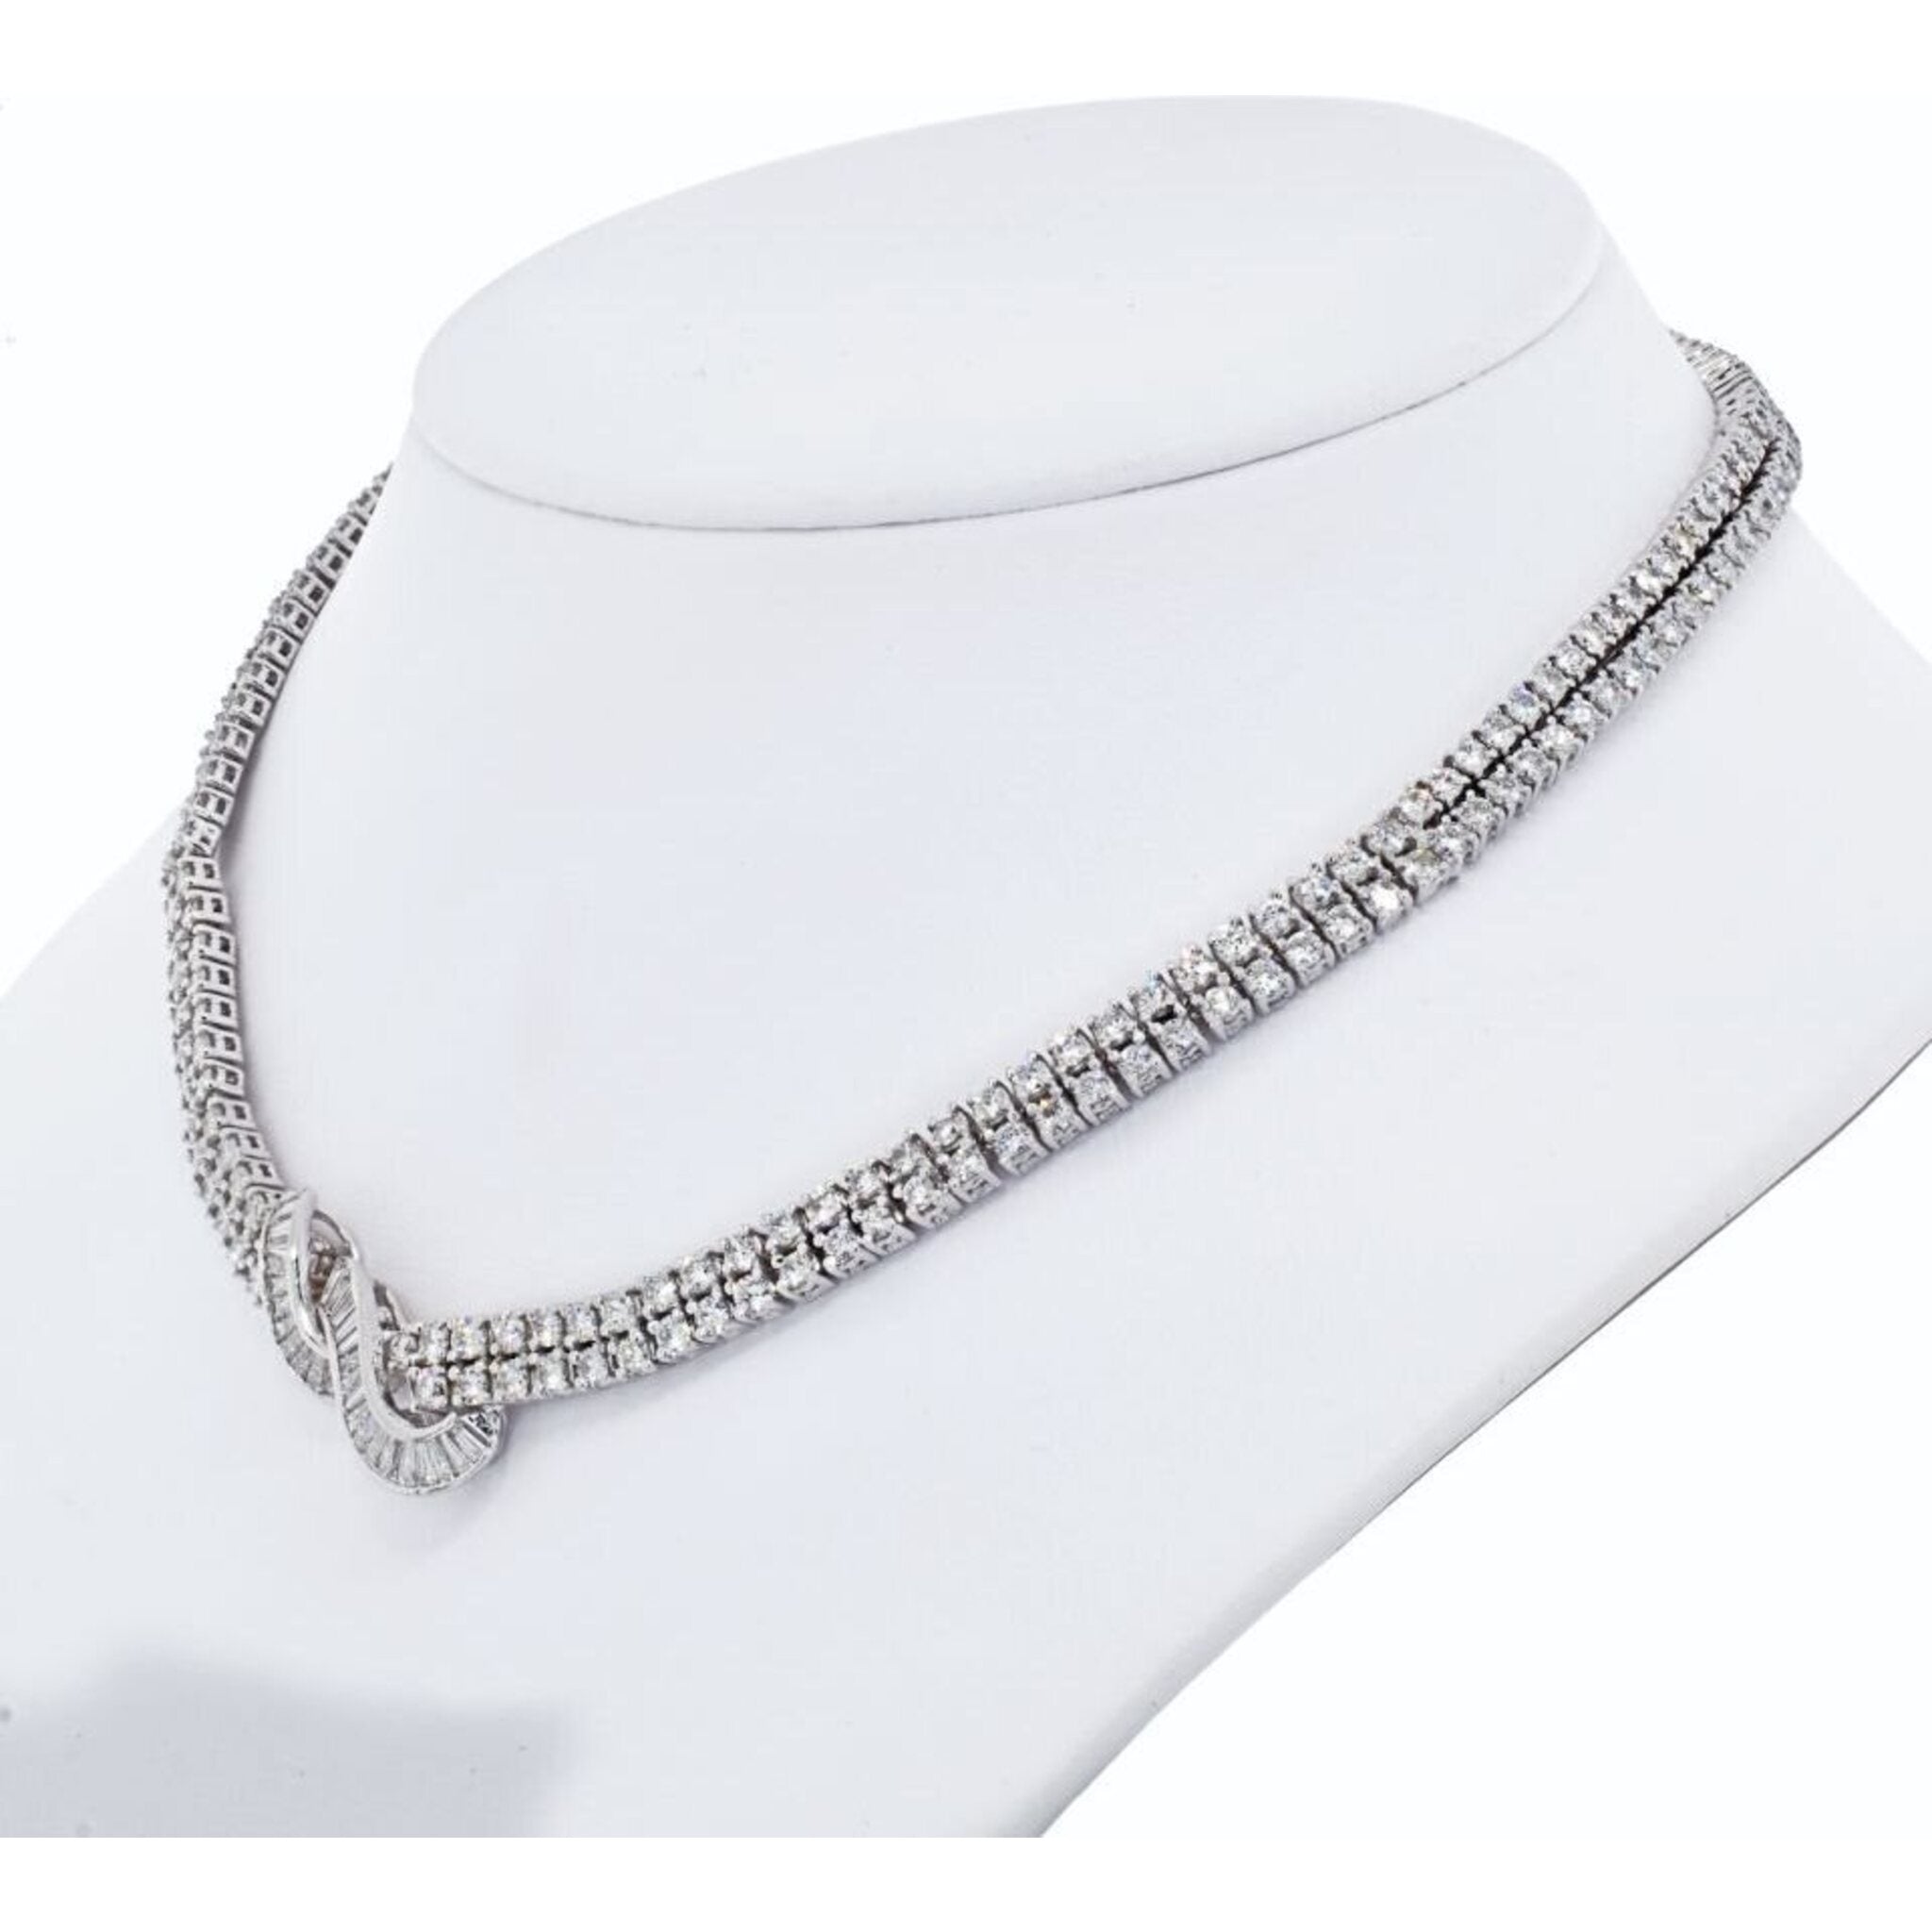 Diamond Tennis Necklace - 993J3RIADFGNKWG – Rocky Point Jewelers